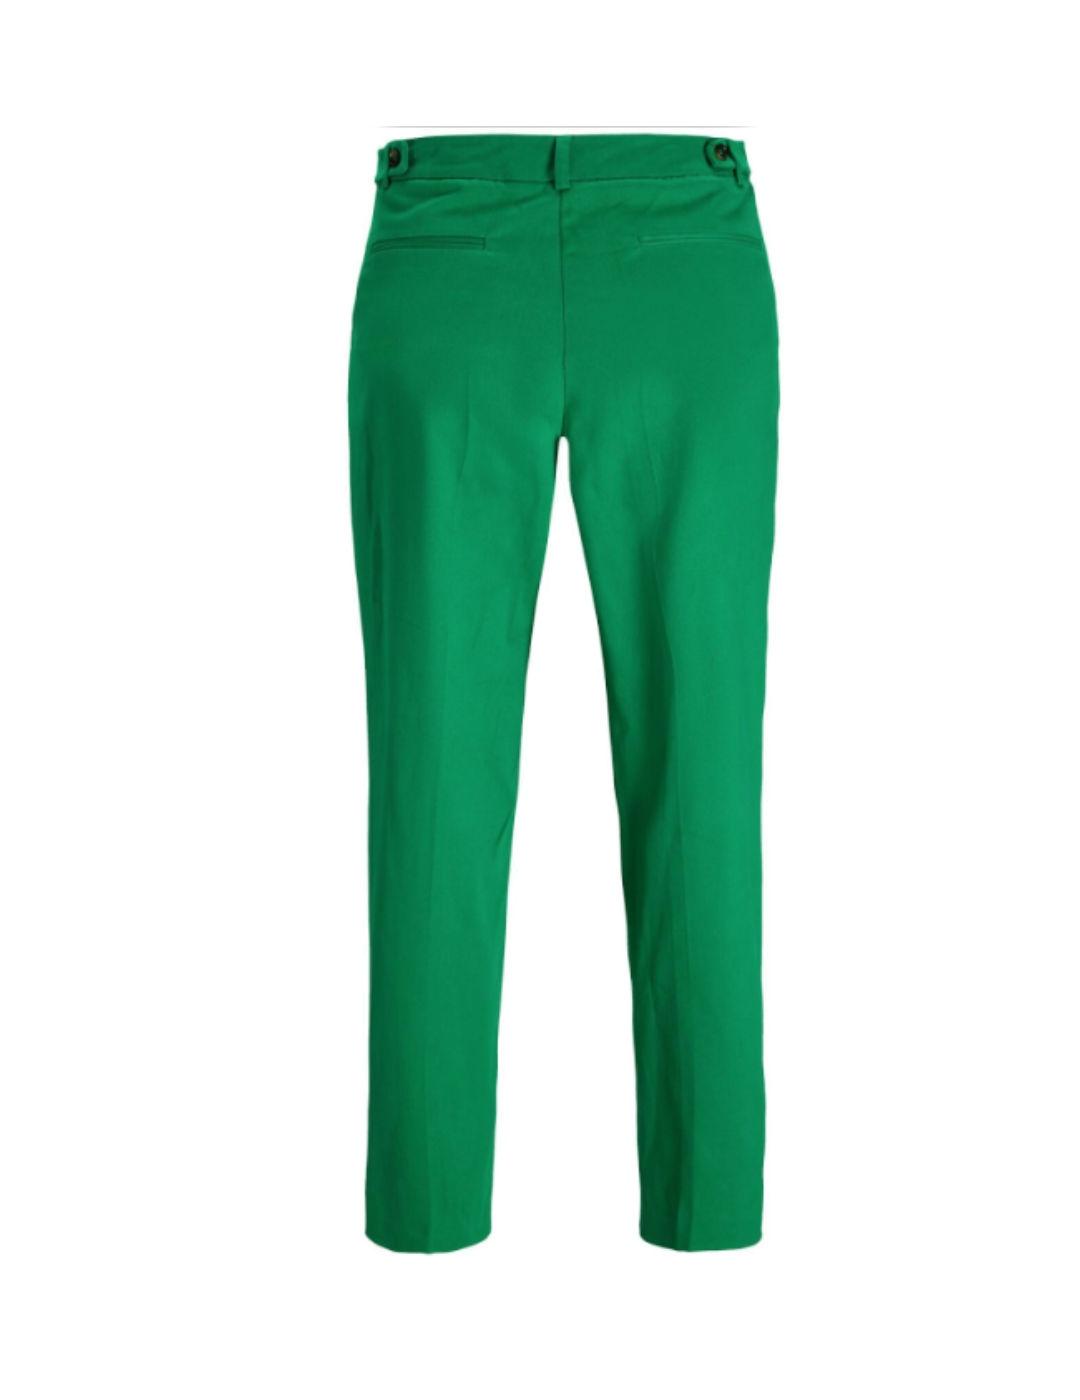 Pantalón JJXX tipo chino holgado en color verde para mujer